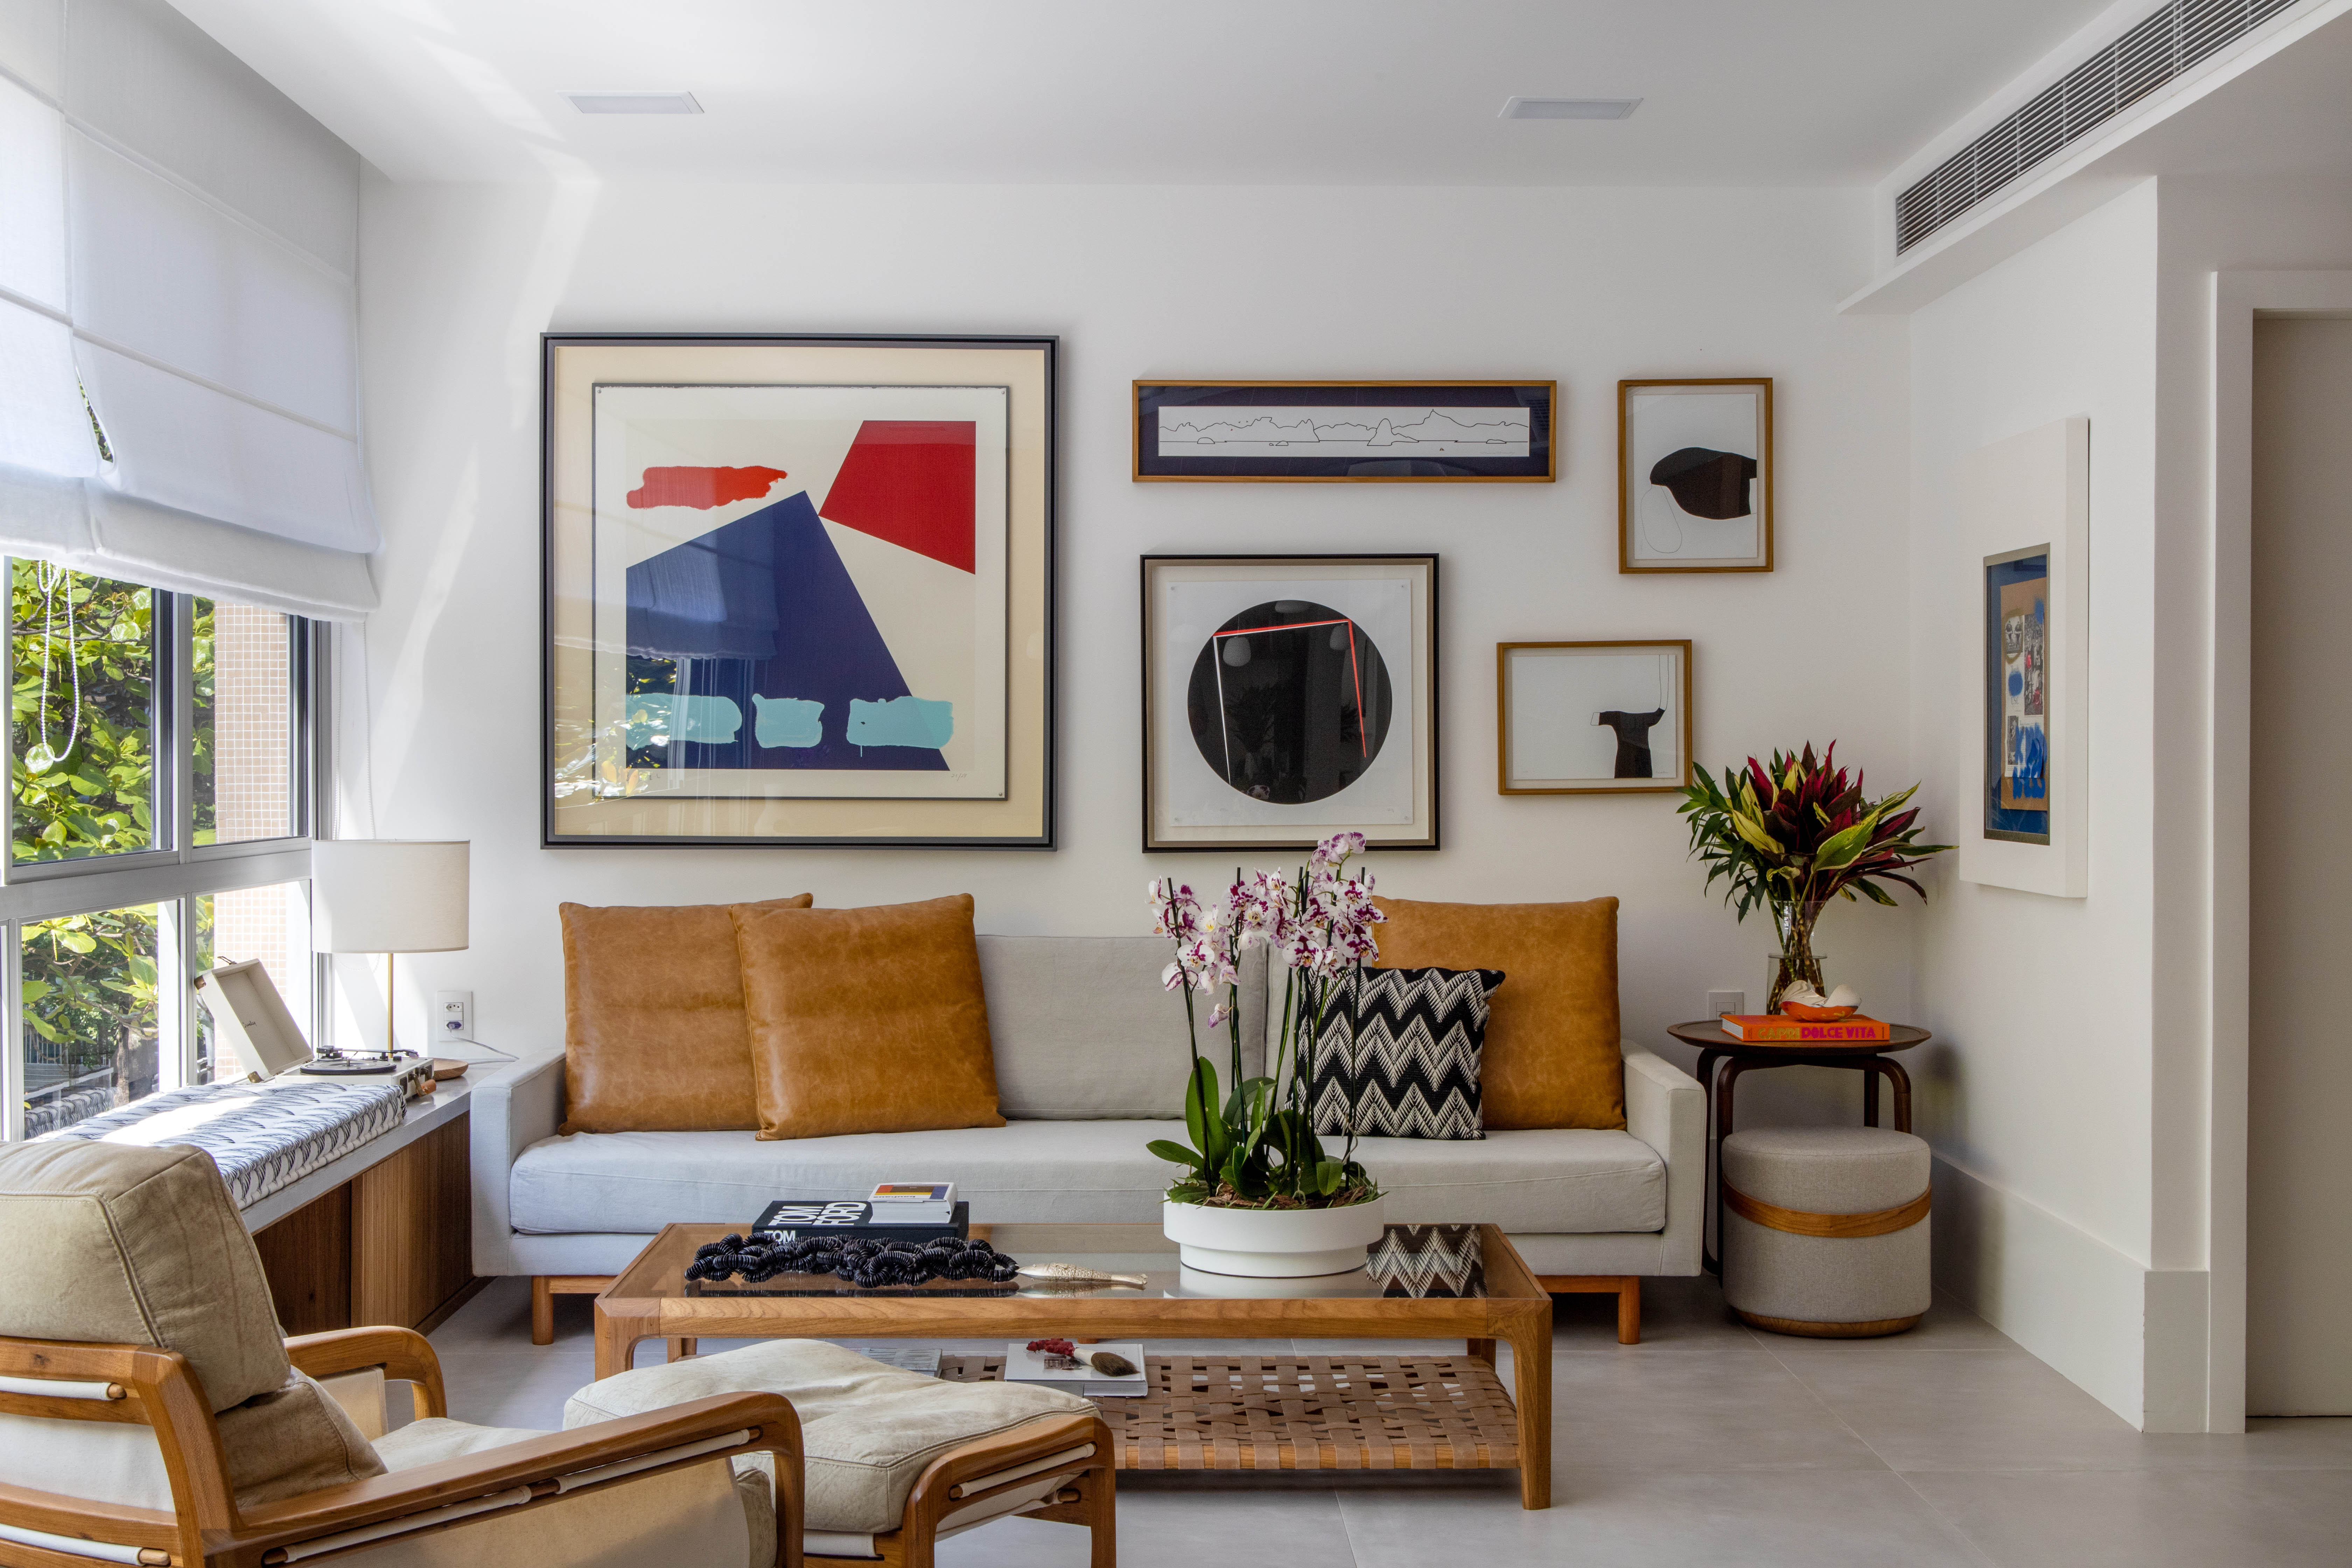 Painéis escondem e revelam ambientes neste apartamento de 130 m². Projeto de Mauricio Nóbrega. Na foto, sala com gallery wall e sofá branco.